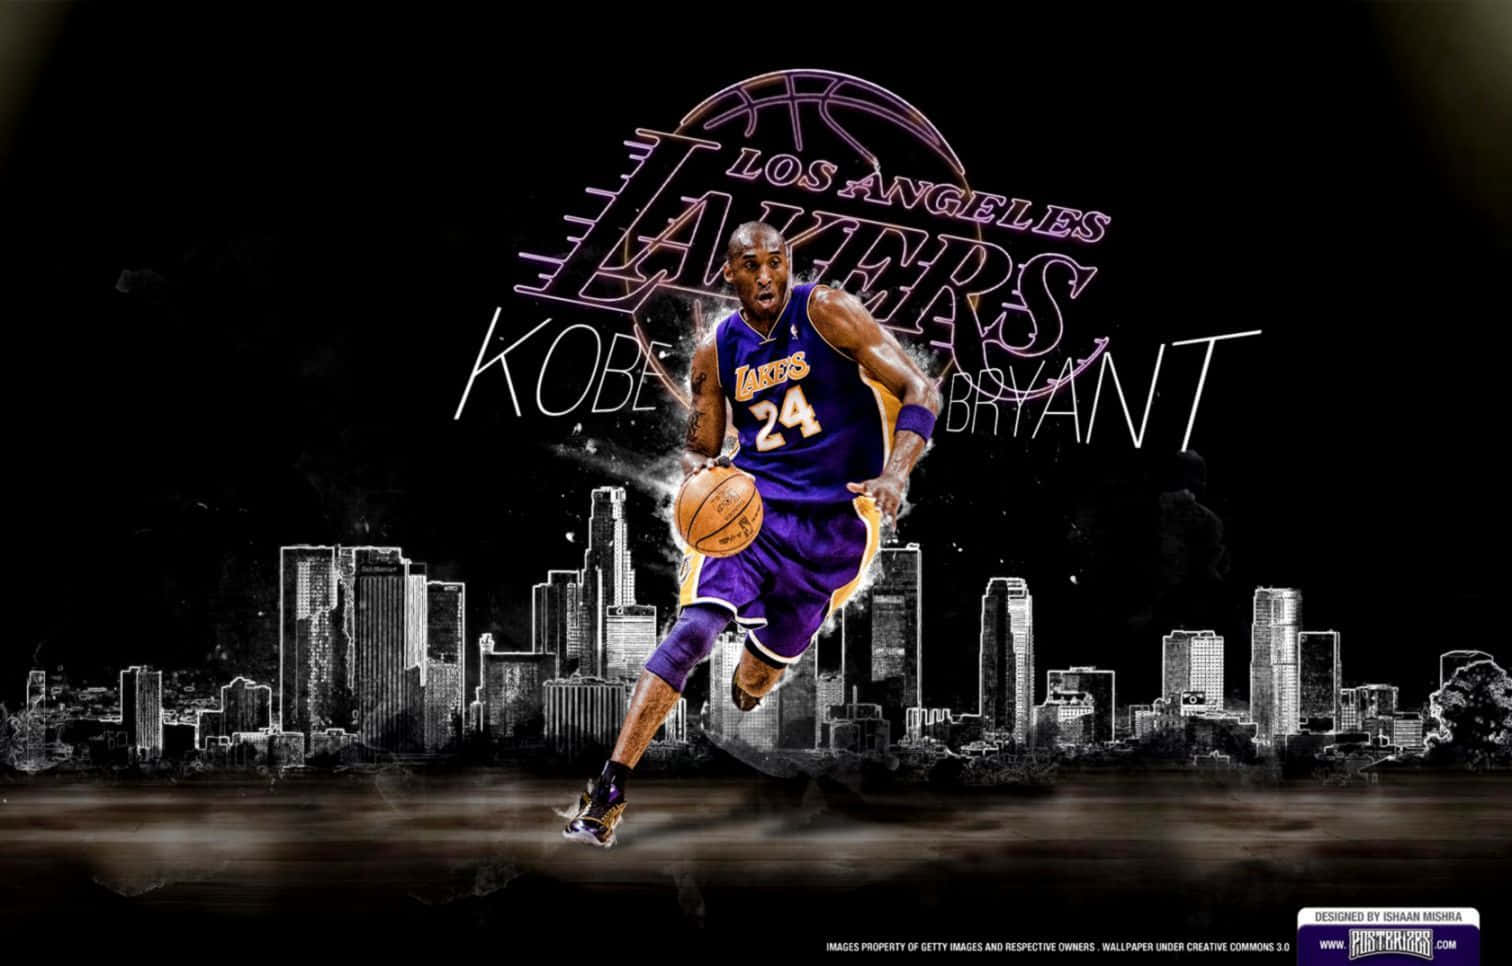 Leggendariogiocatore Di Basket Kobe Bryant